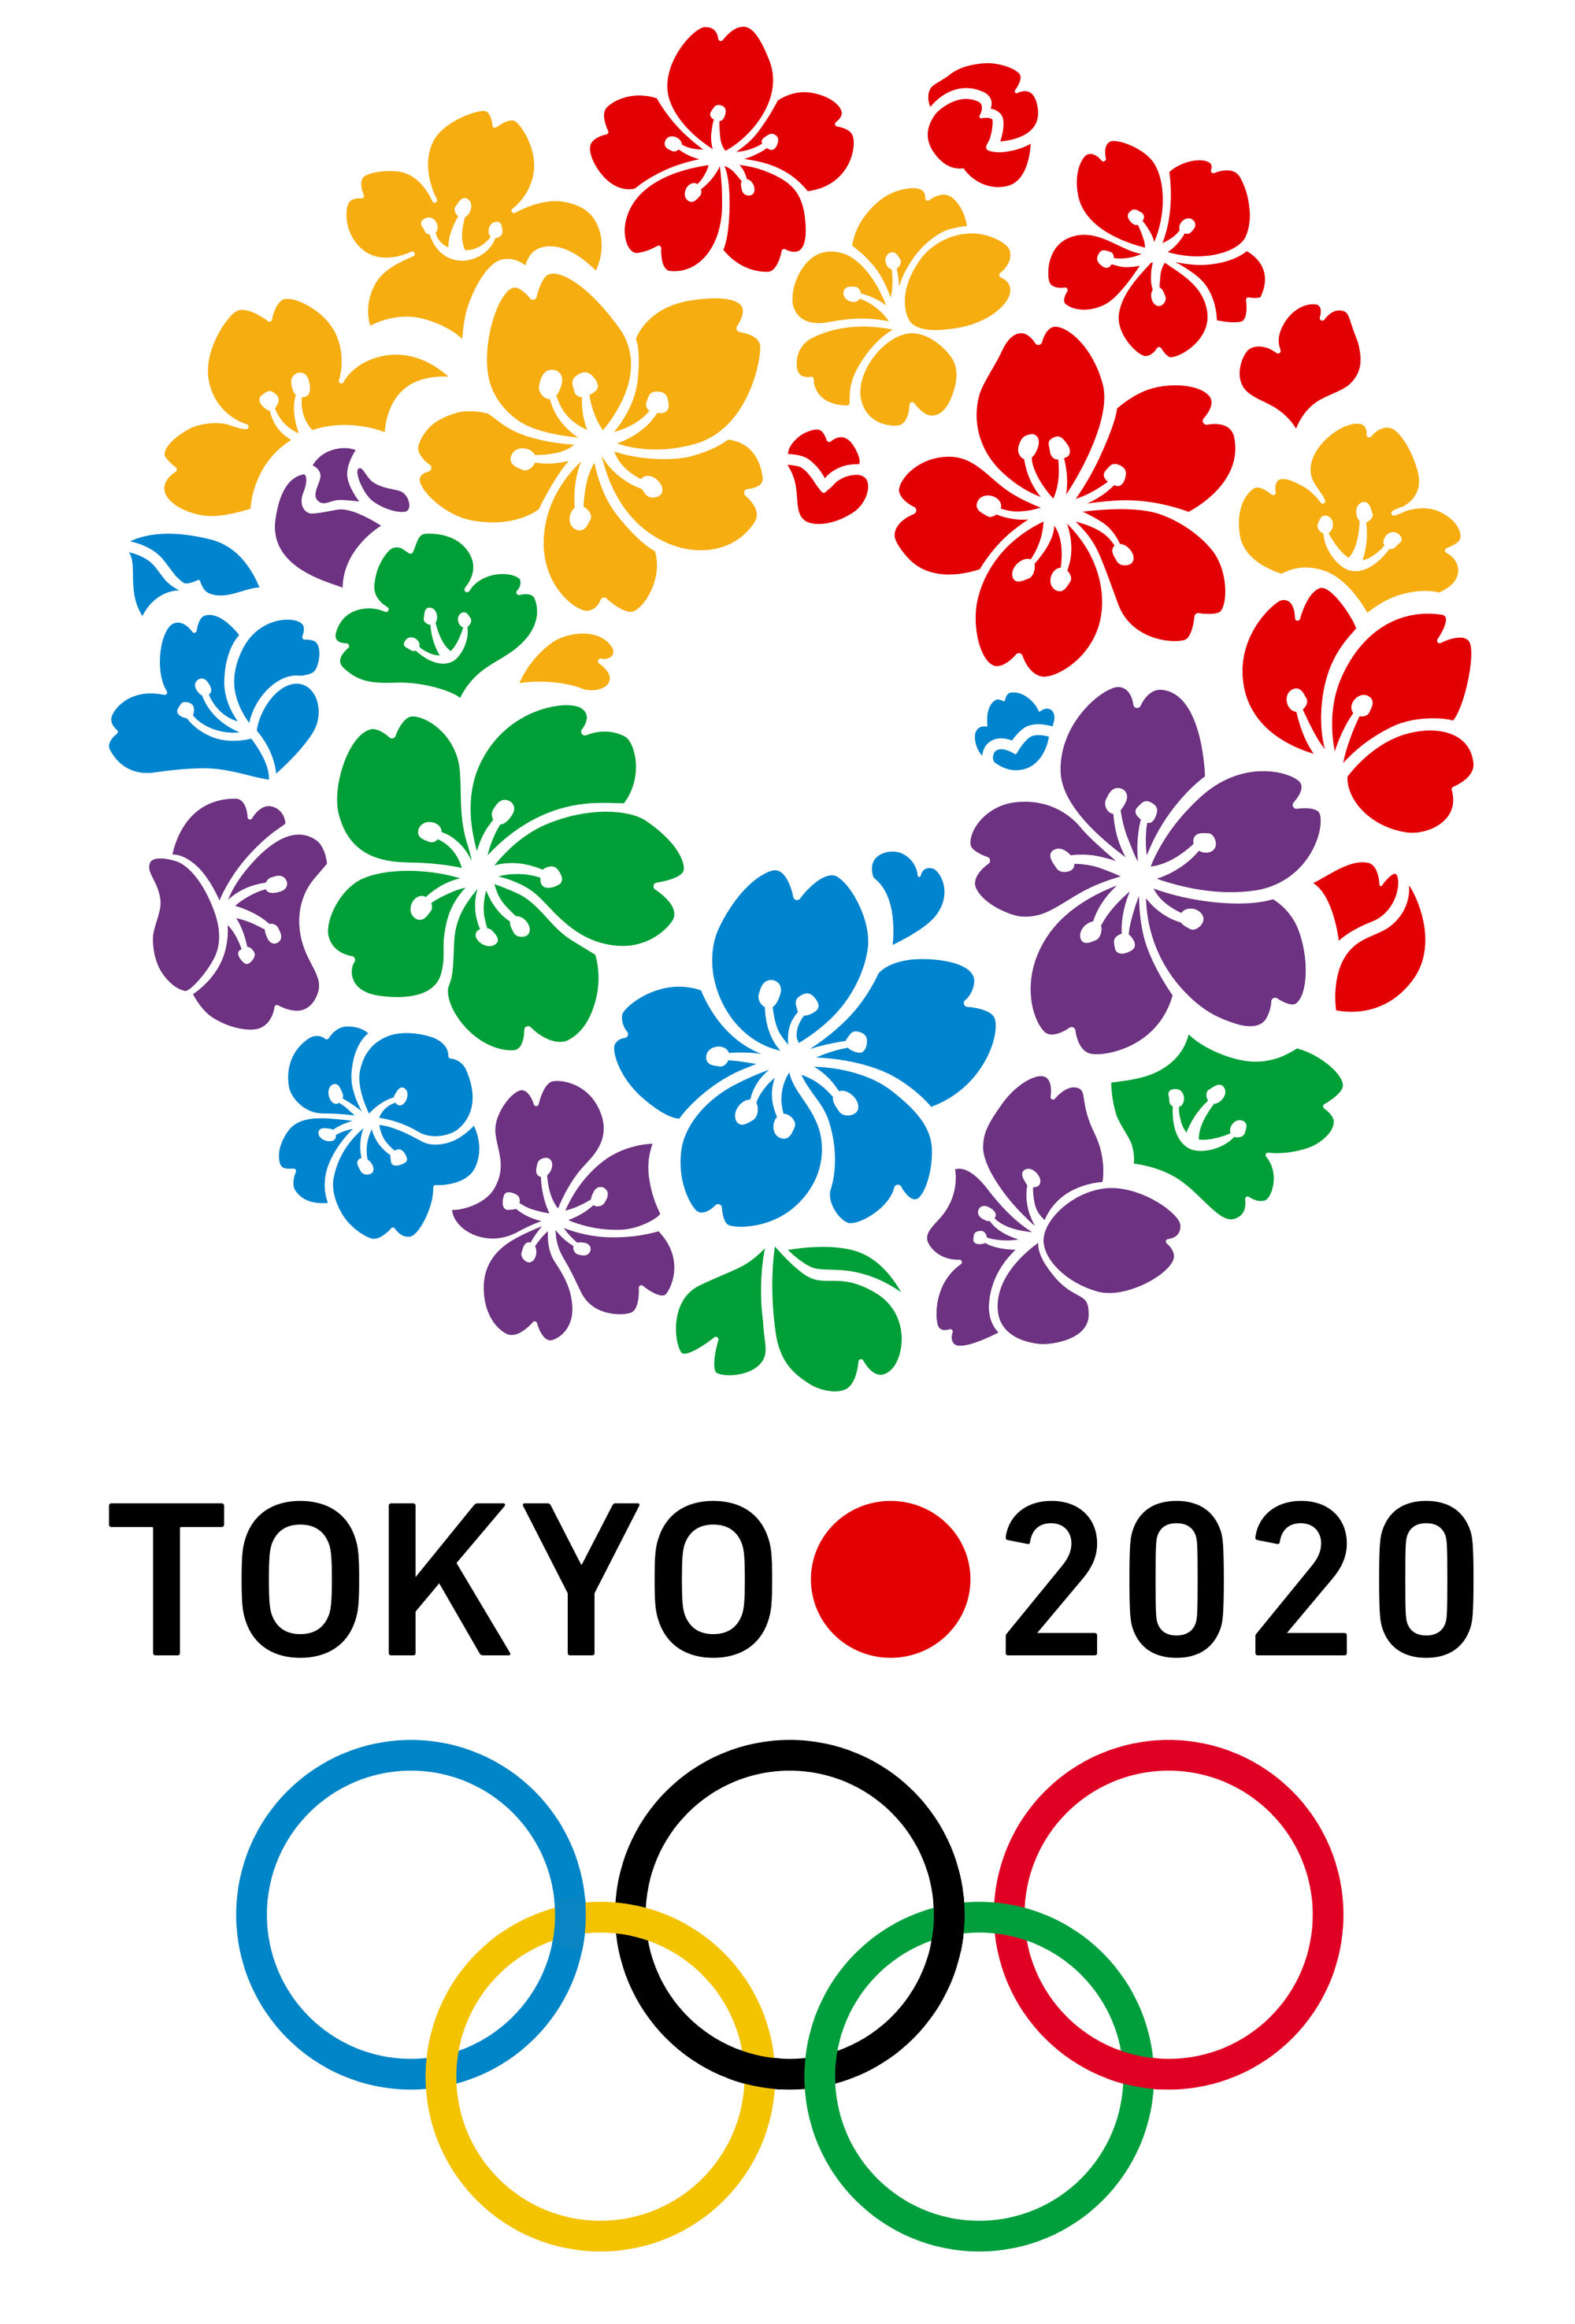 Tokyo 2020 Games Emblem Fonts In Use